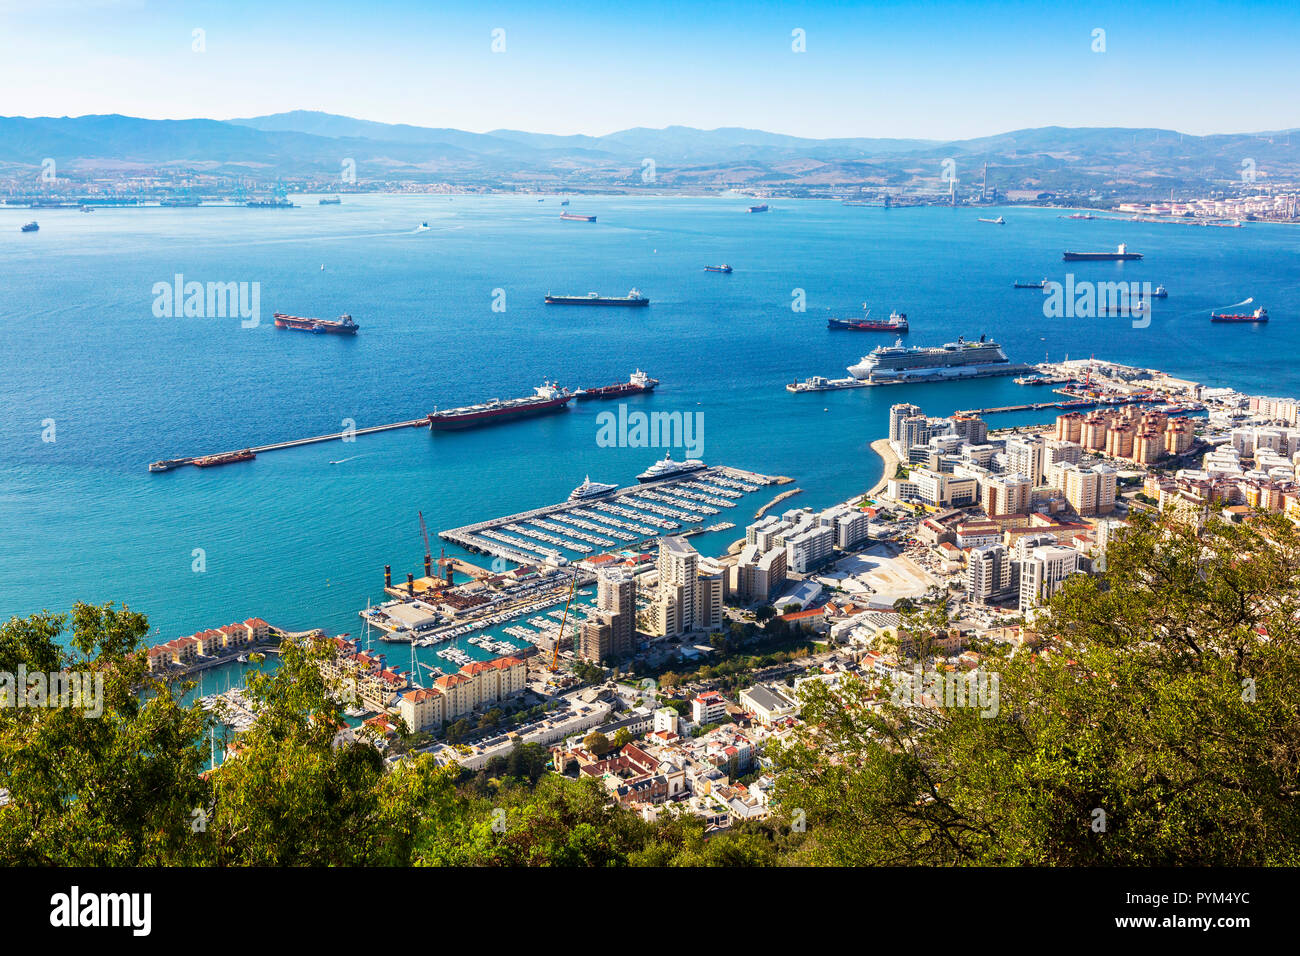 Alta Vista sobre el puerto de Gibraltar con un crucero amarrado al brazo occidental del muelle de contenedores, y vistas a la bahía de Gibraltar a los españoles mai Foto de stock